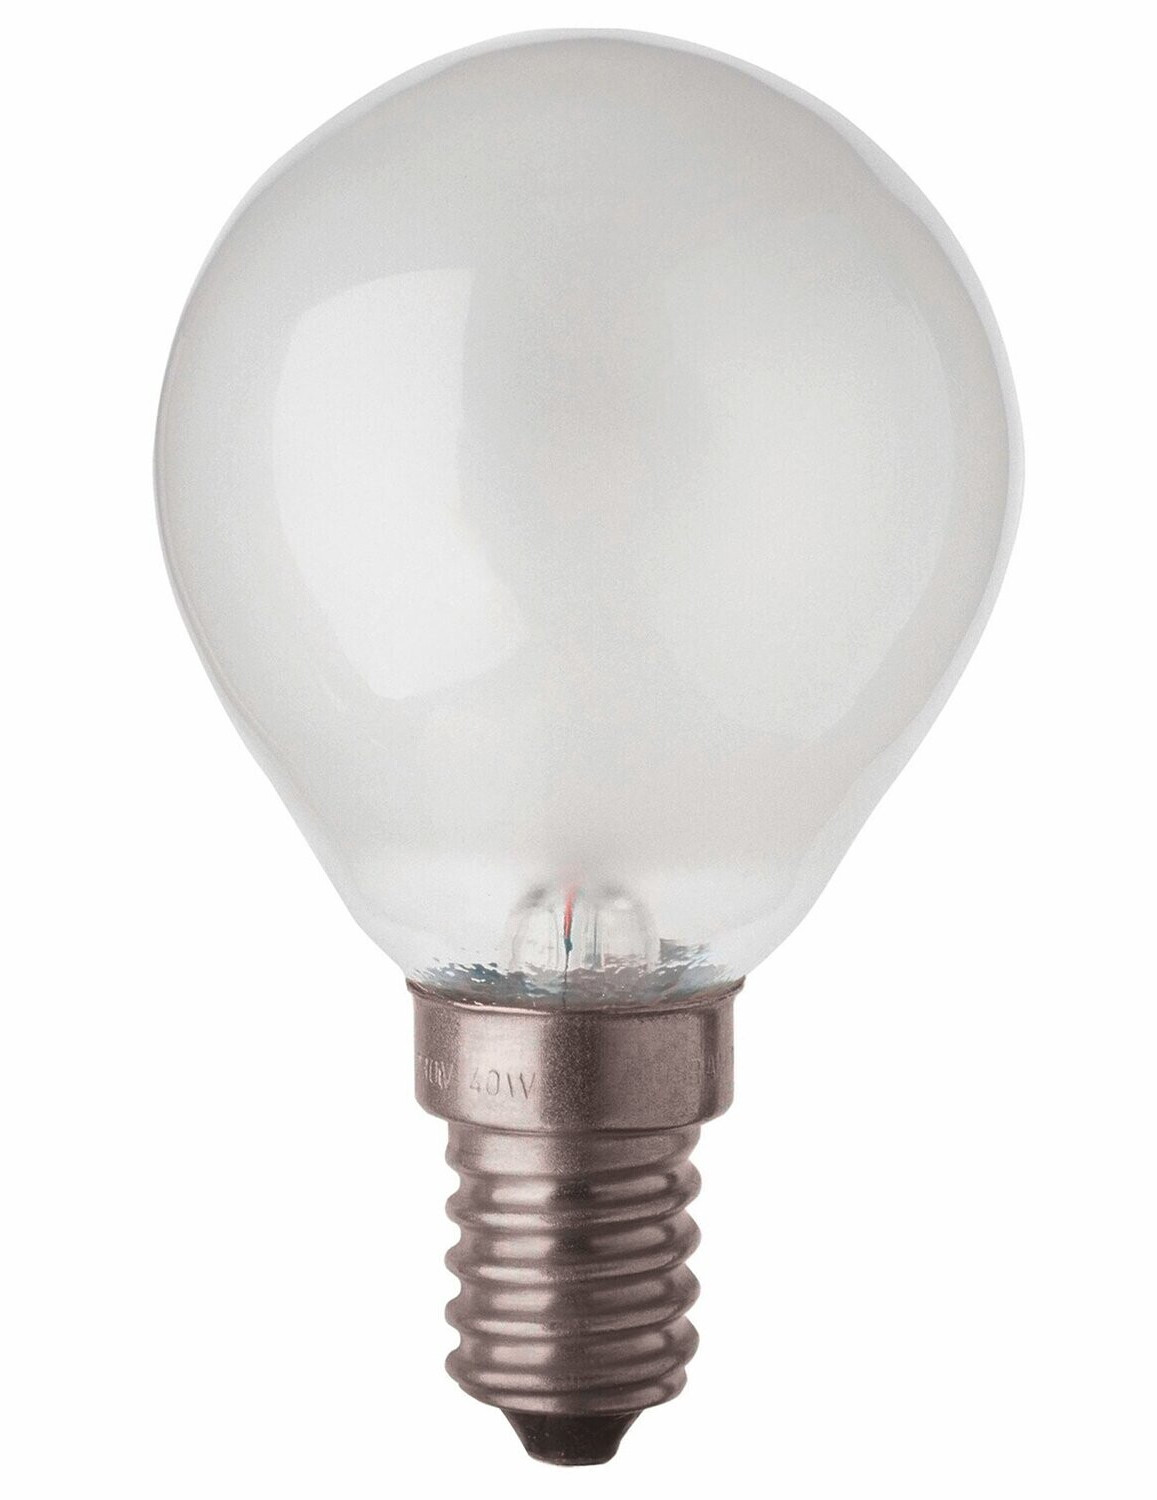 Ampoule incandescente sphérique 25W E14 230V Blanc chaud 400 lm